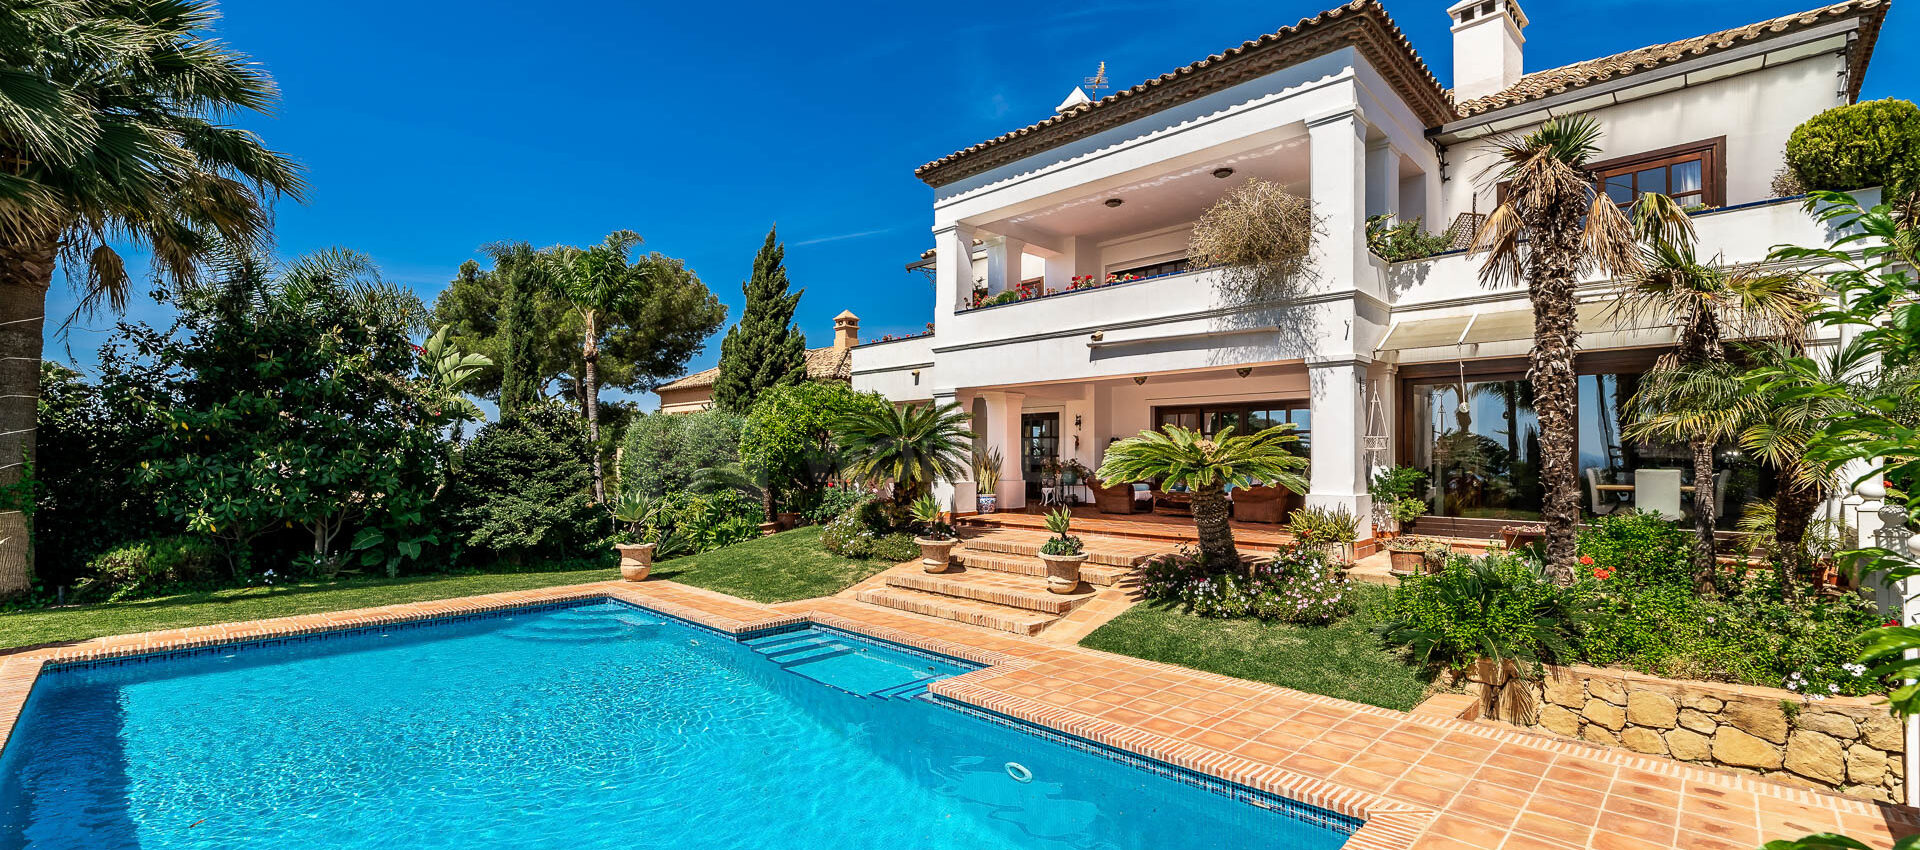 Exclusive Villa with the best sea views in Altos Reales Marbella